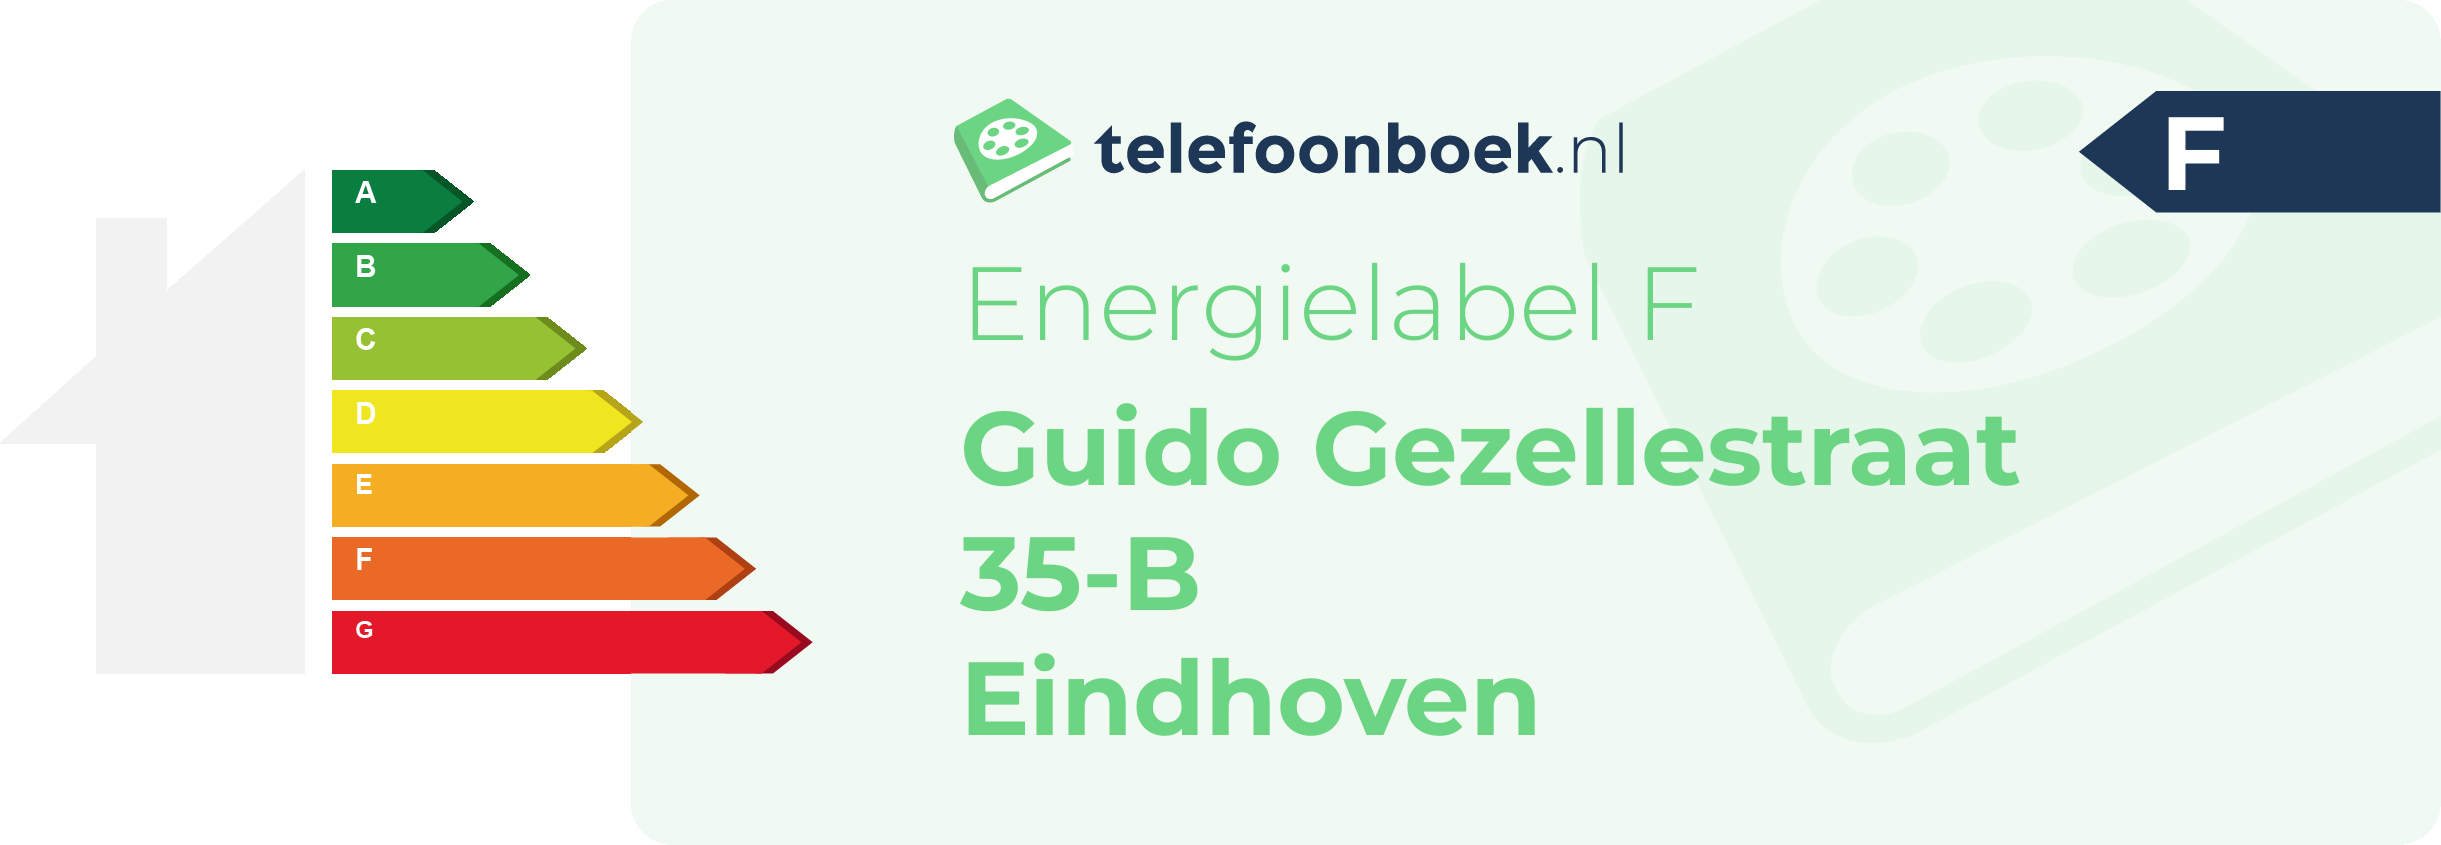 Energielabel Guido Gezellestraat 35-B Eindhoven